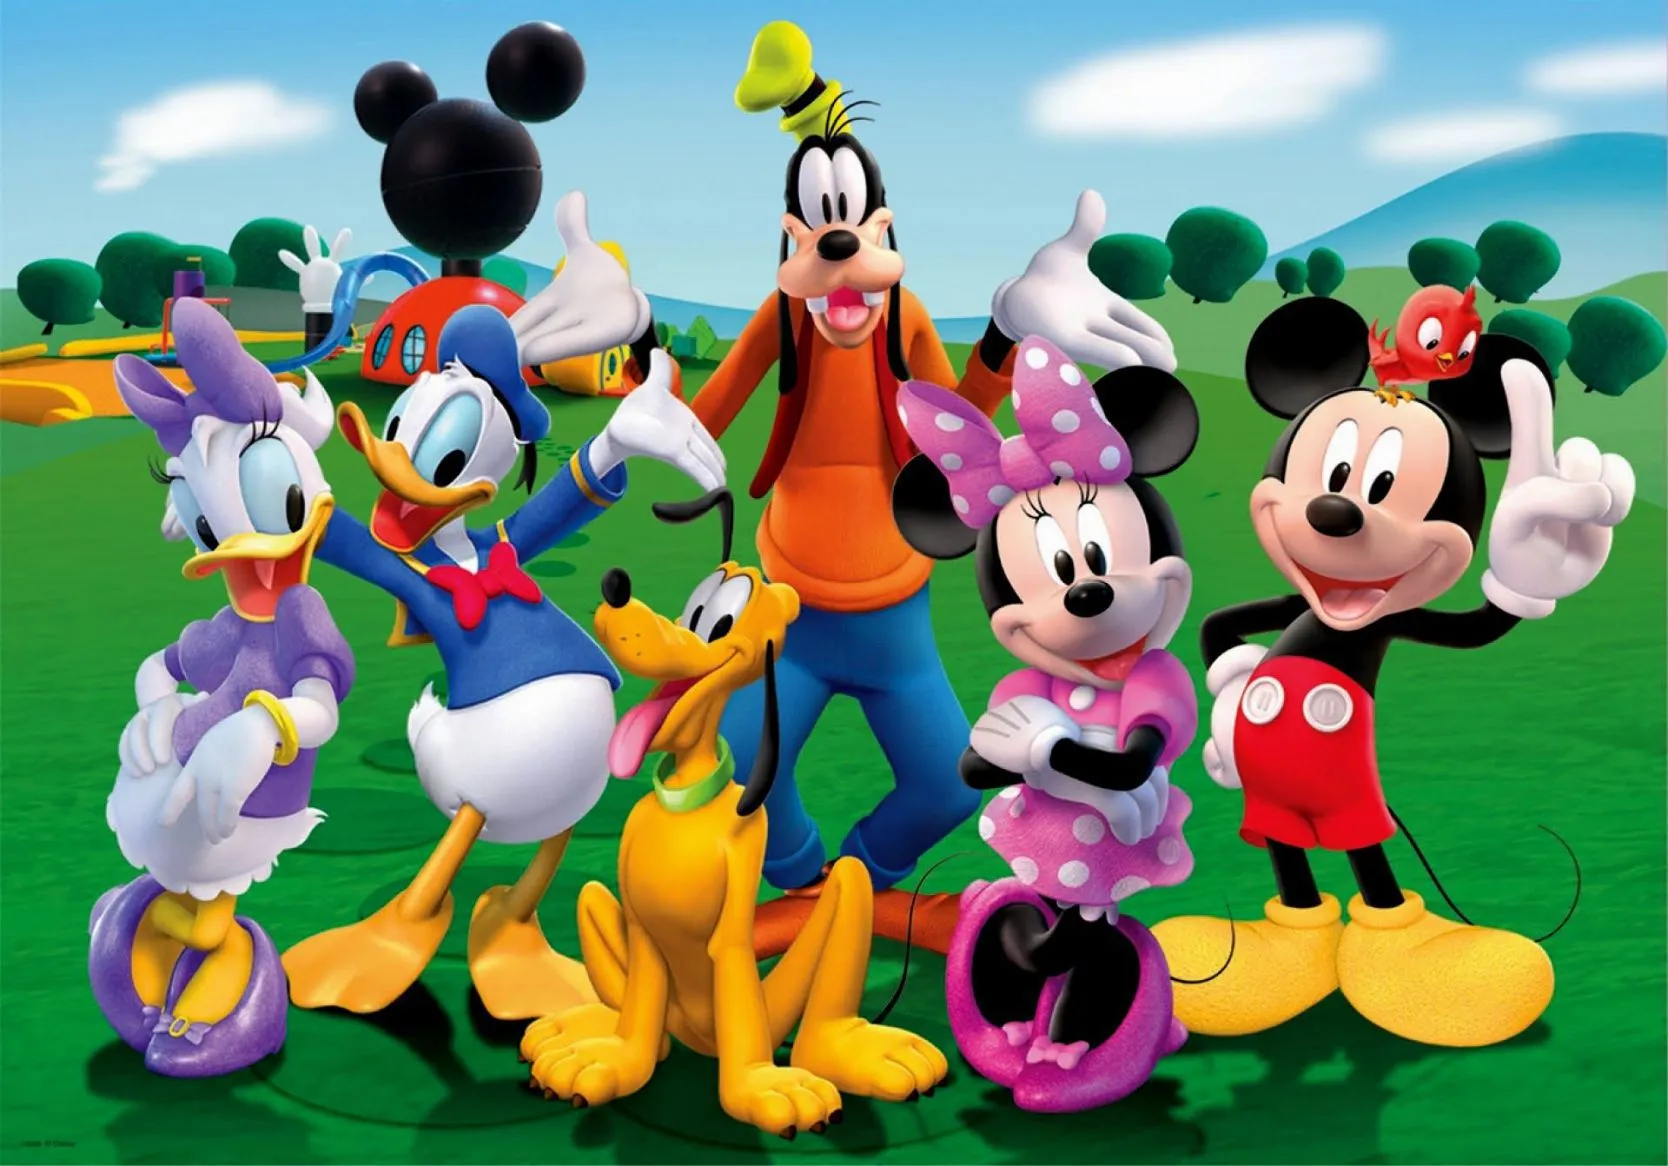 Celebre o Dia da Amizade assistindo Mickey e Amigos no Disney+ -  Entretetizei